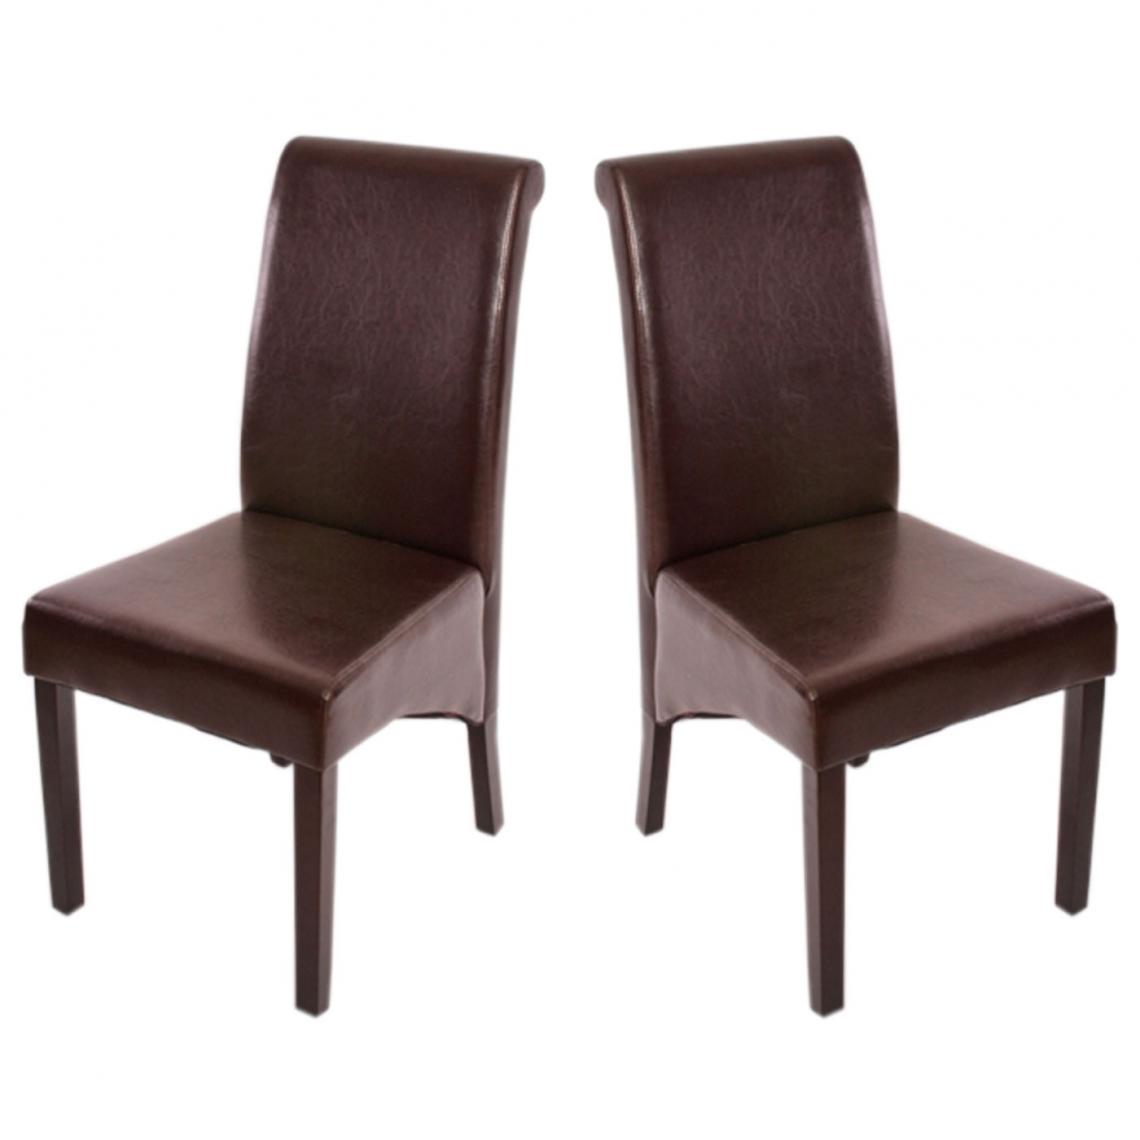 Mendler - 2x chaise de séjour M37, cuir reconstitué, marron/pieds foncés - Chaises